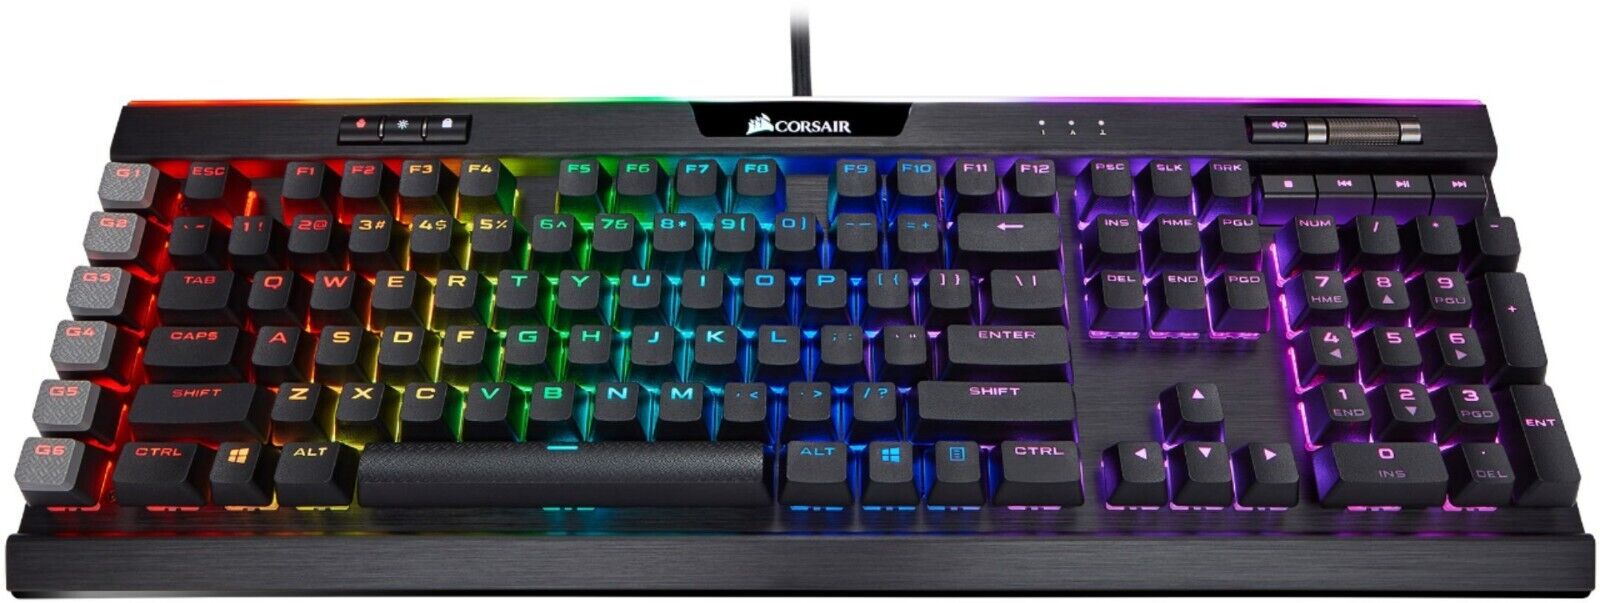 K95 RGB PLATINUM Mechanical Gaming Keyboard CHERRY Wired LED Gaming Keyboard